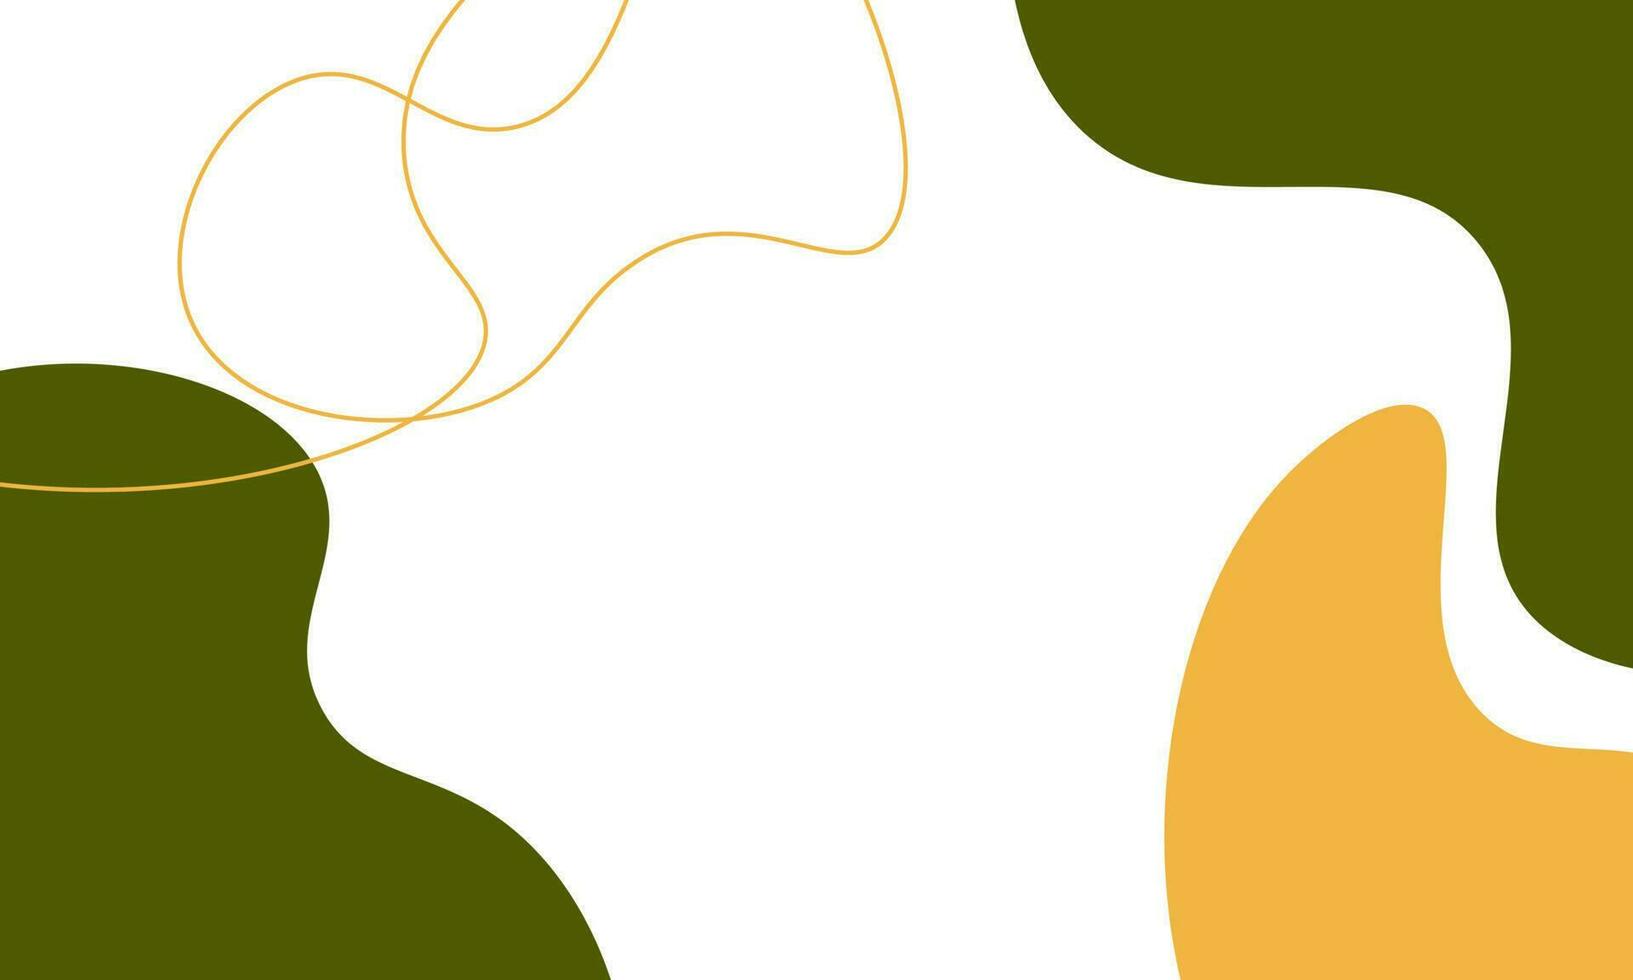 abstrait blanc, vert jaune. conception de modèle pour les médias sociaux, bannière, carte vecteur